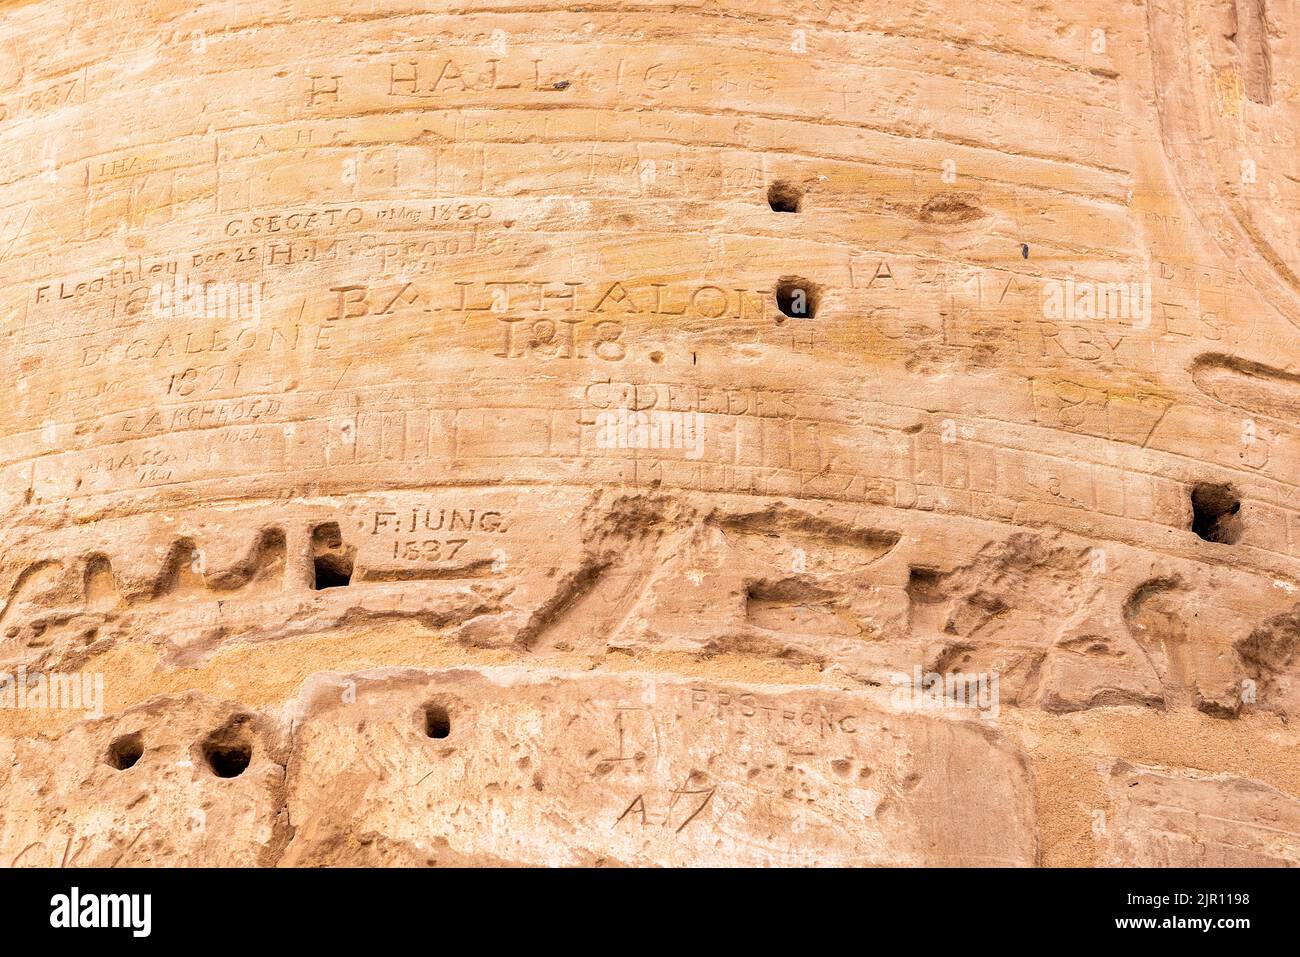 Luxor, Egipto; 18 de agosto de 2022 - Graffiti victoriano tallado en una columna en el templo Karnak, Luxor, Egipto. Foto de stock